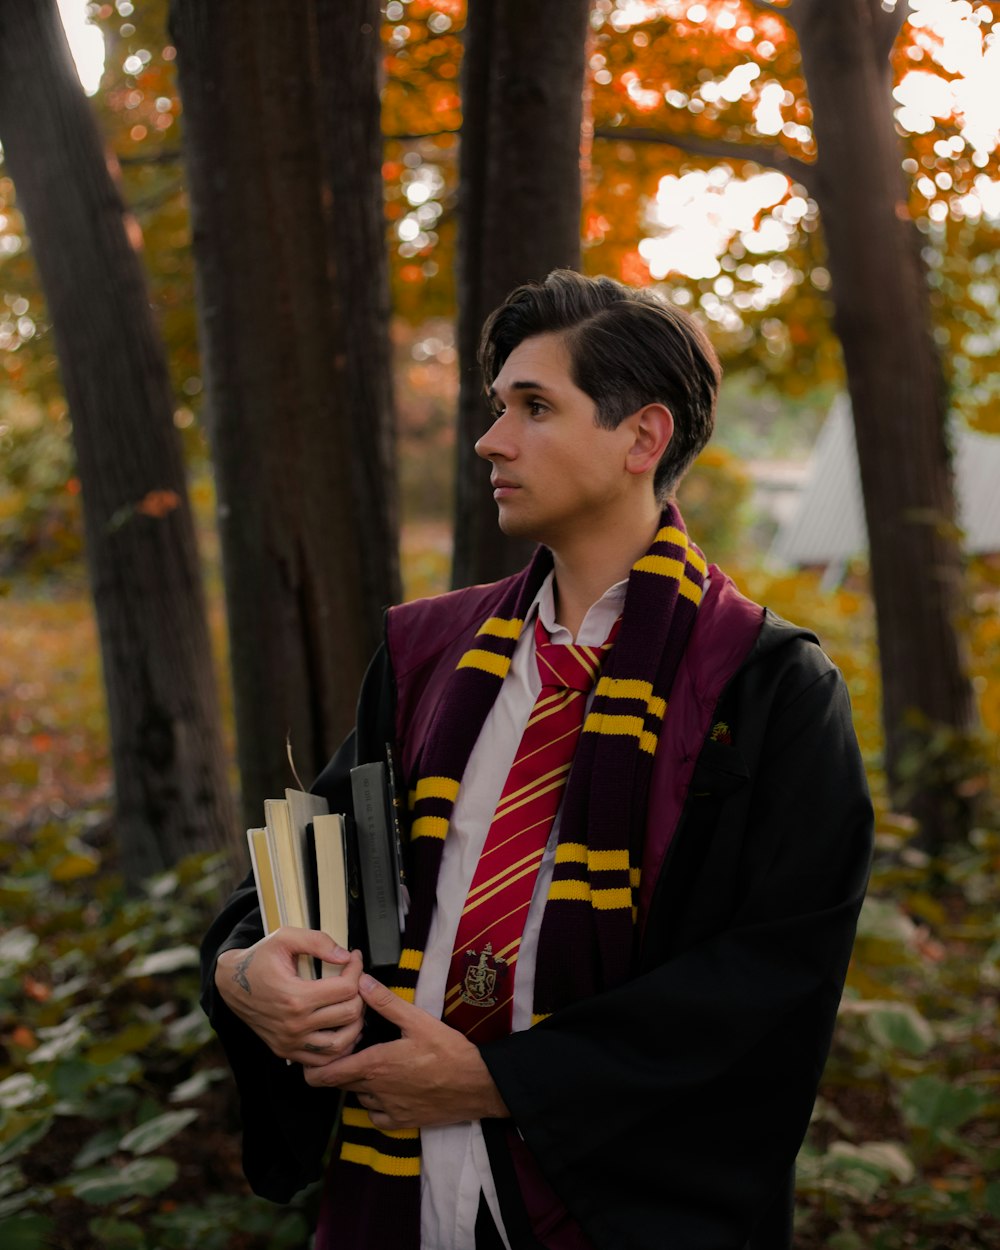 Um jovem vestido com uma fantasia de Harry Potter